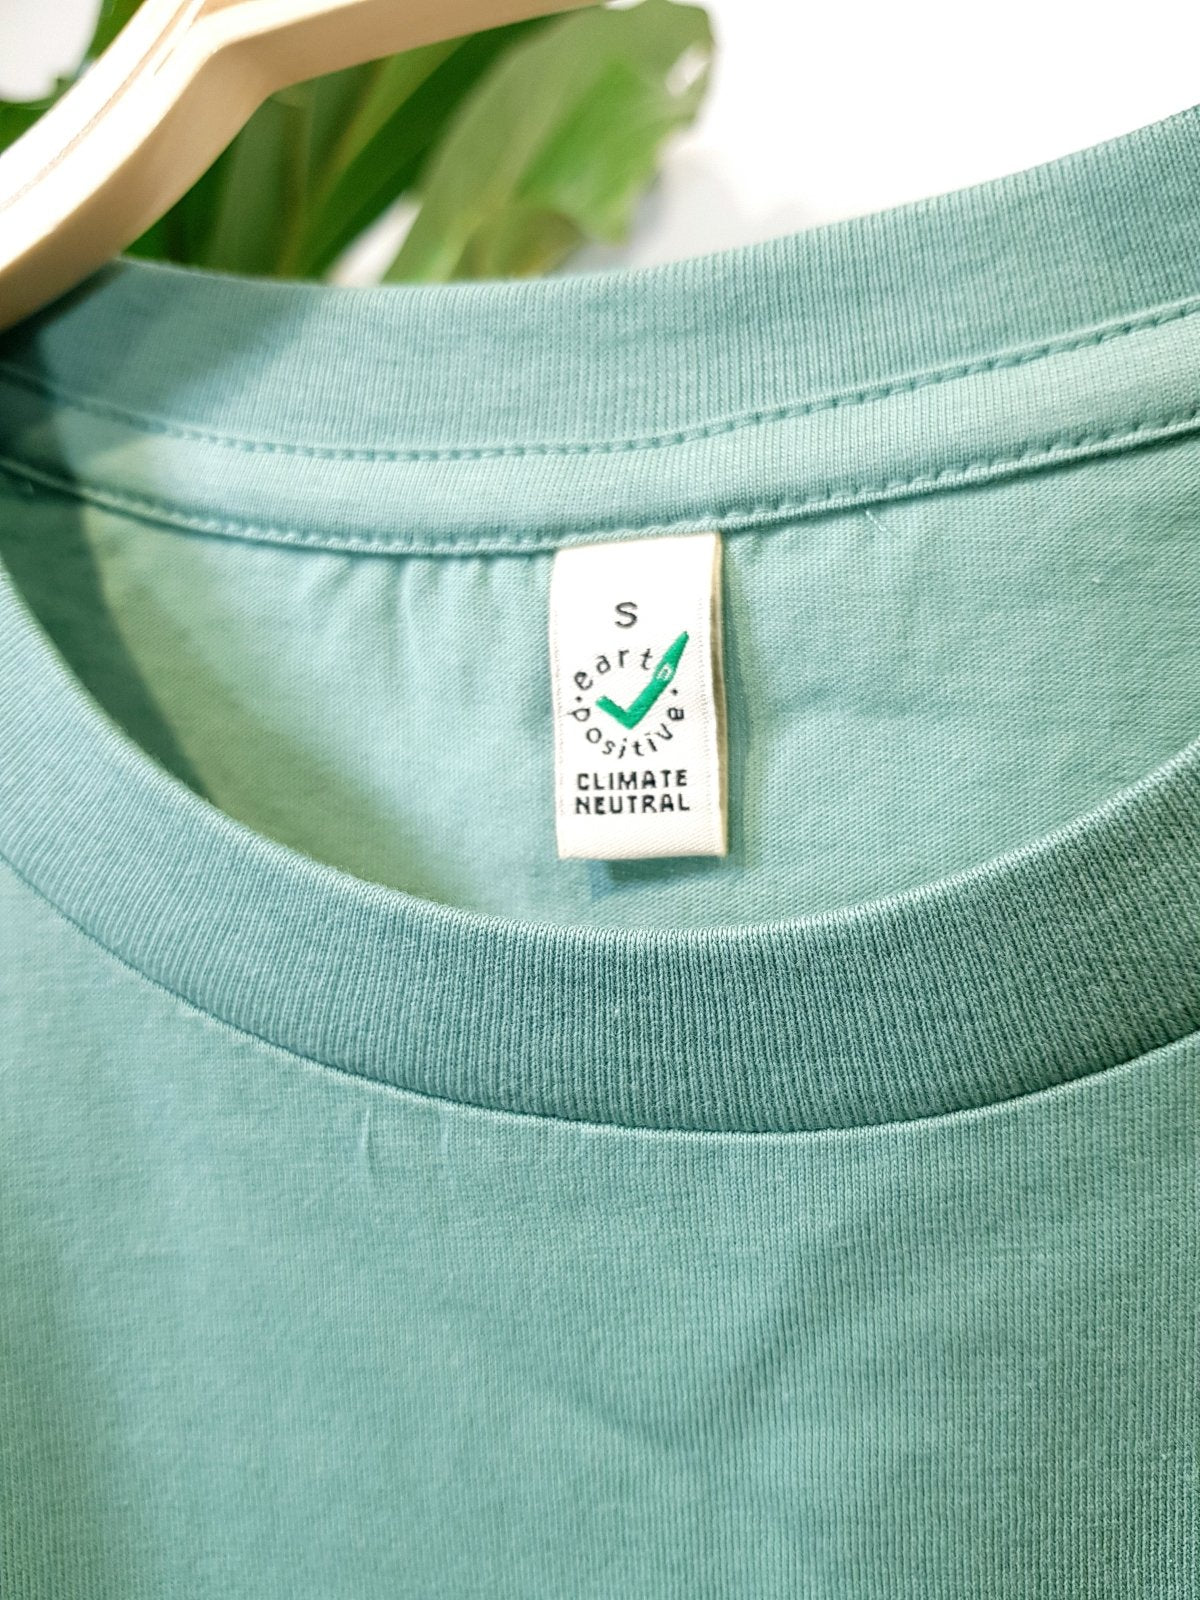 pannenkoekplant sage green unisex organic t-shirt te koop in de webshop van Almost Summer Amsterdam